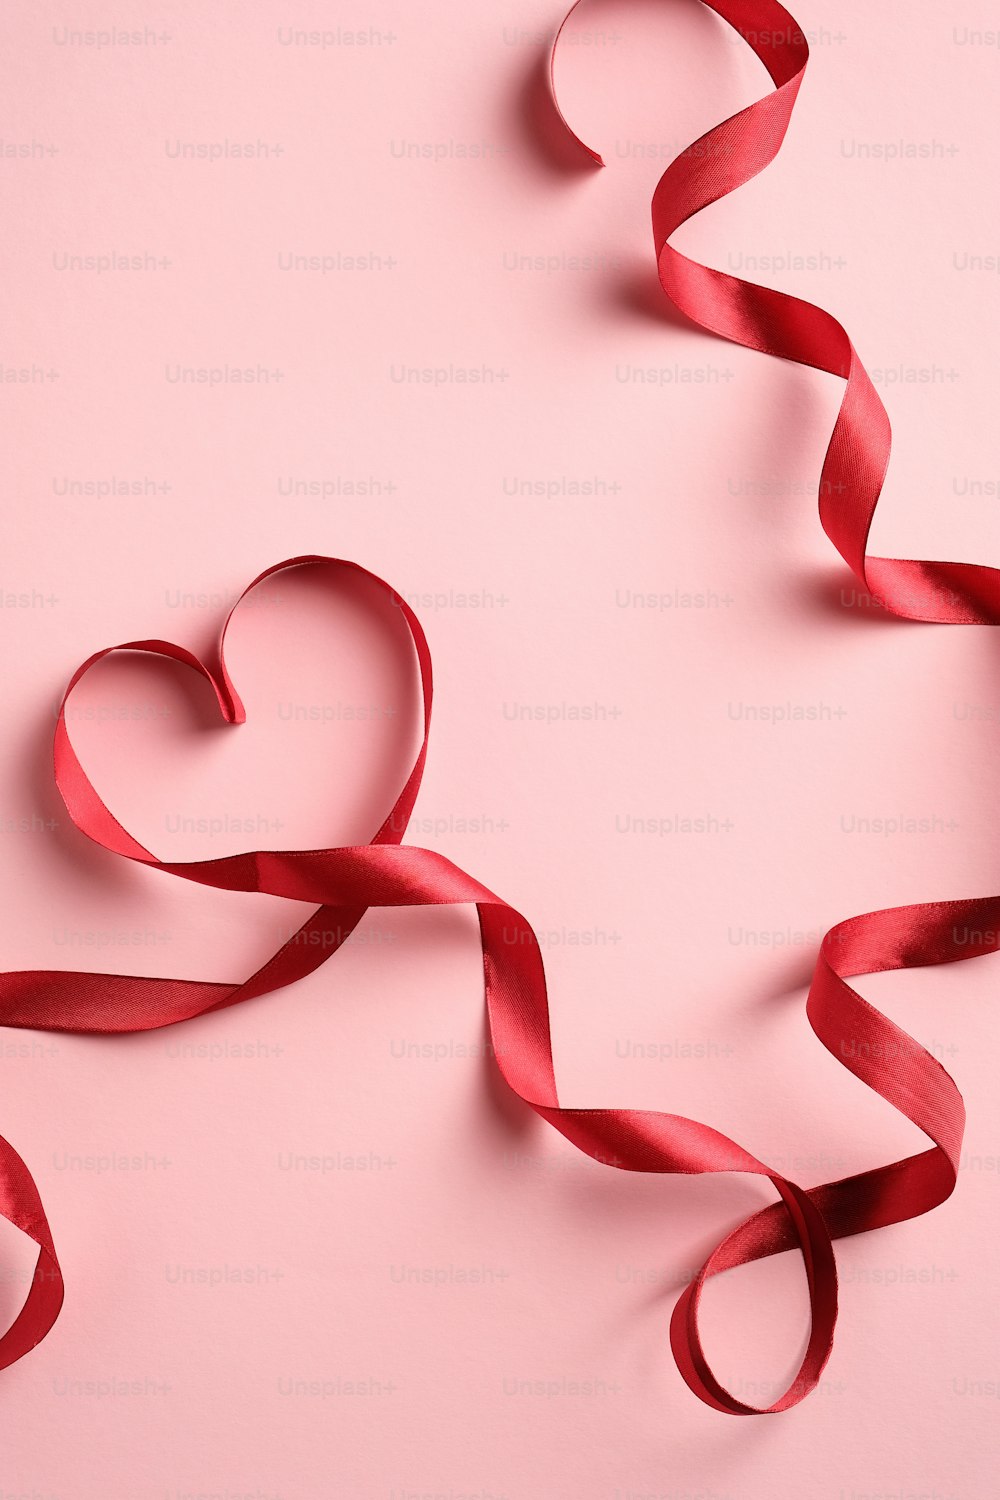 Fita vermelha em forma de coração no fundo cor-de-rosa. Amor, conceito de romance. Dia dos Namorados ou modelo de cartão de felicitações do Dia das Mães.